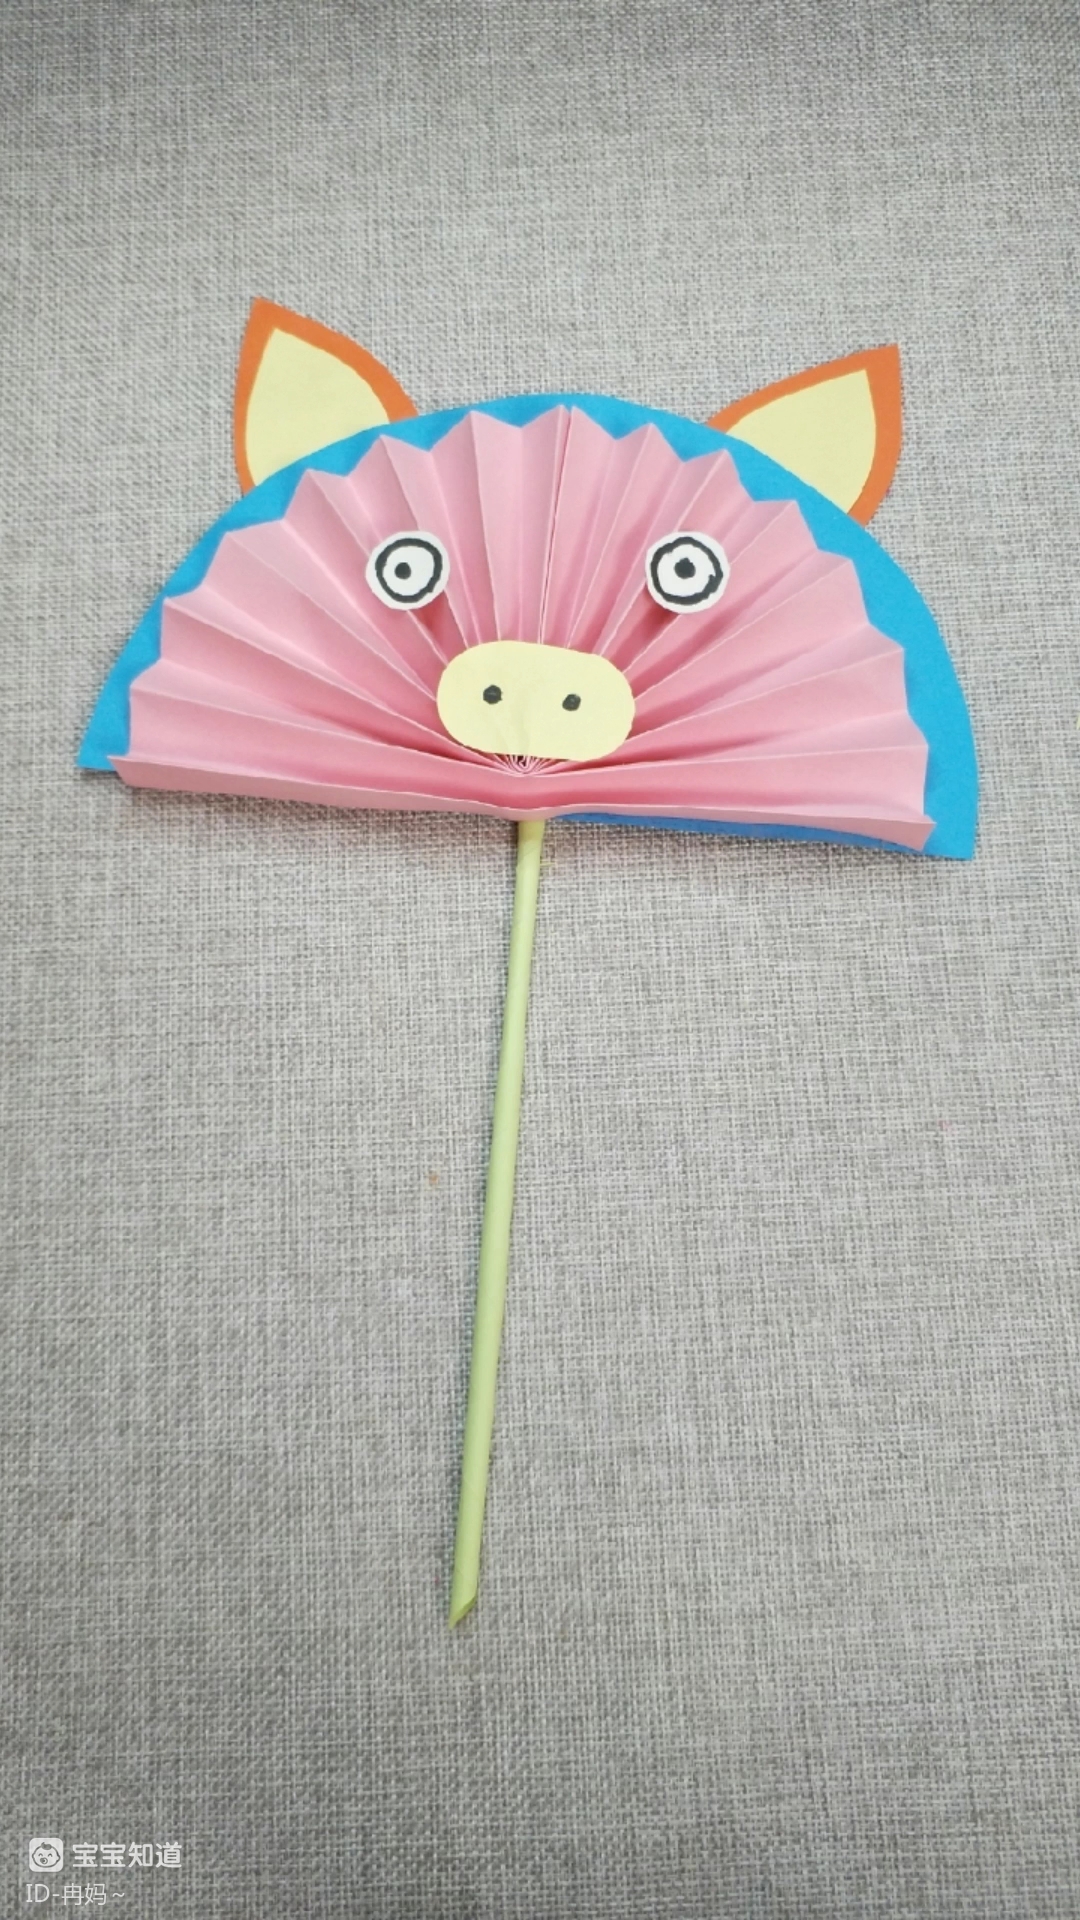 手工折纸:一把可爱的猪猪扇子